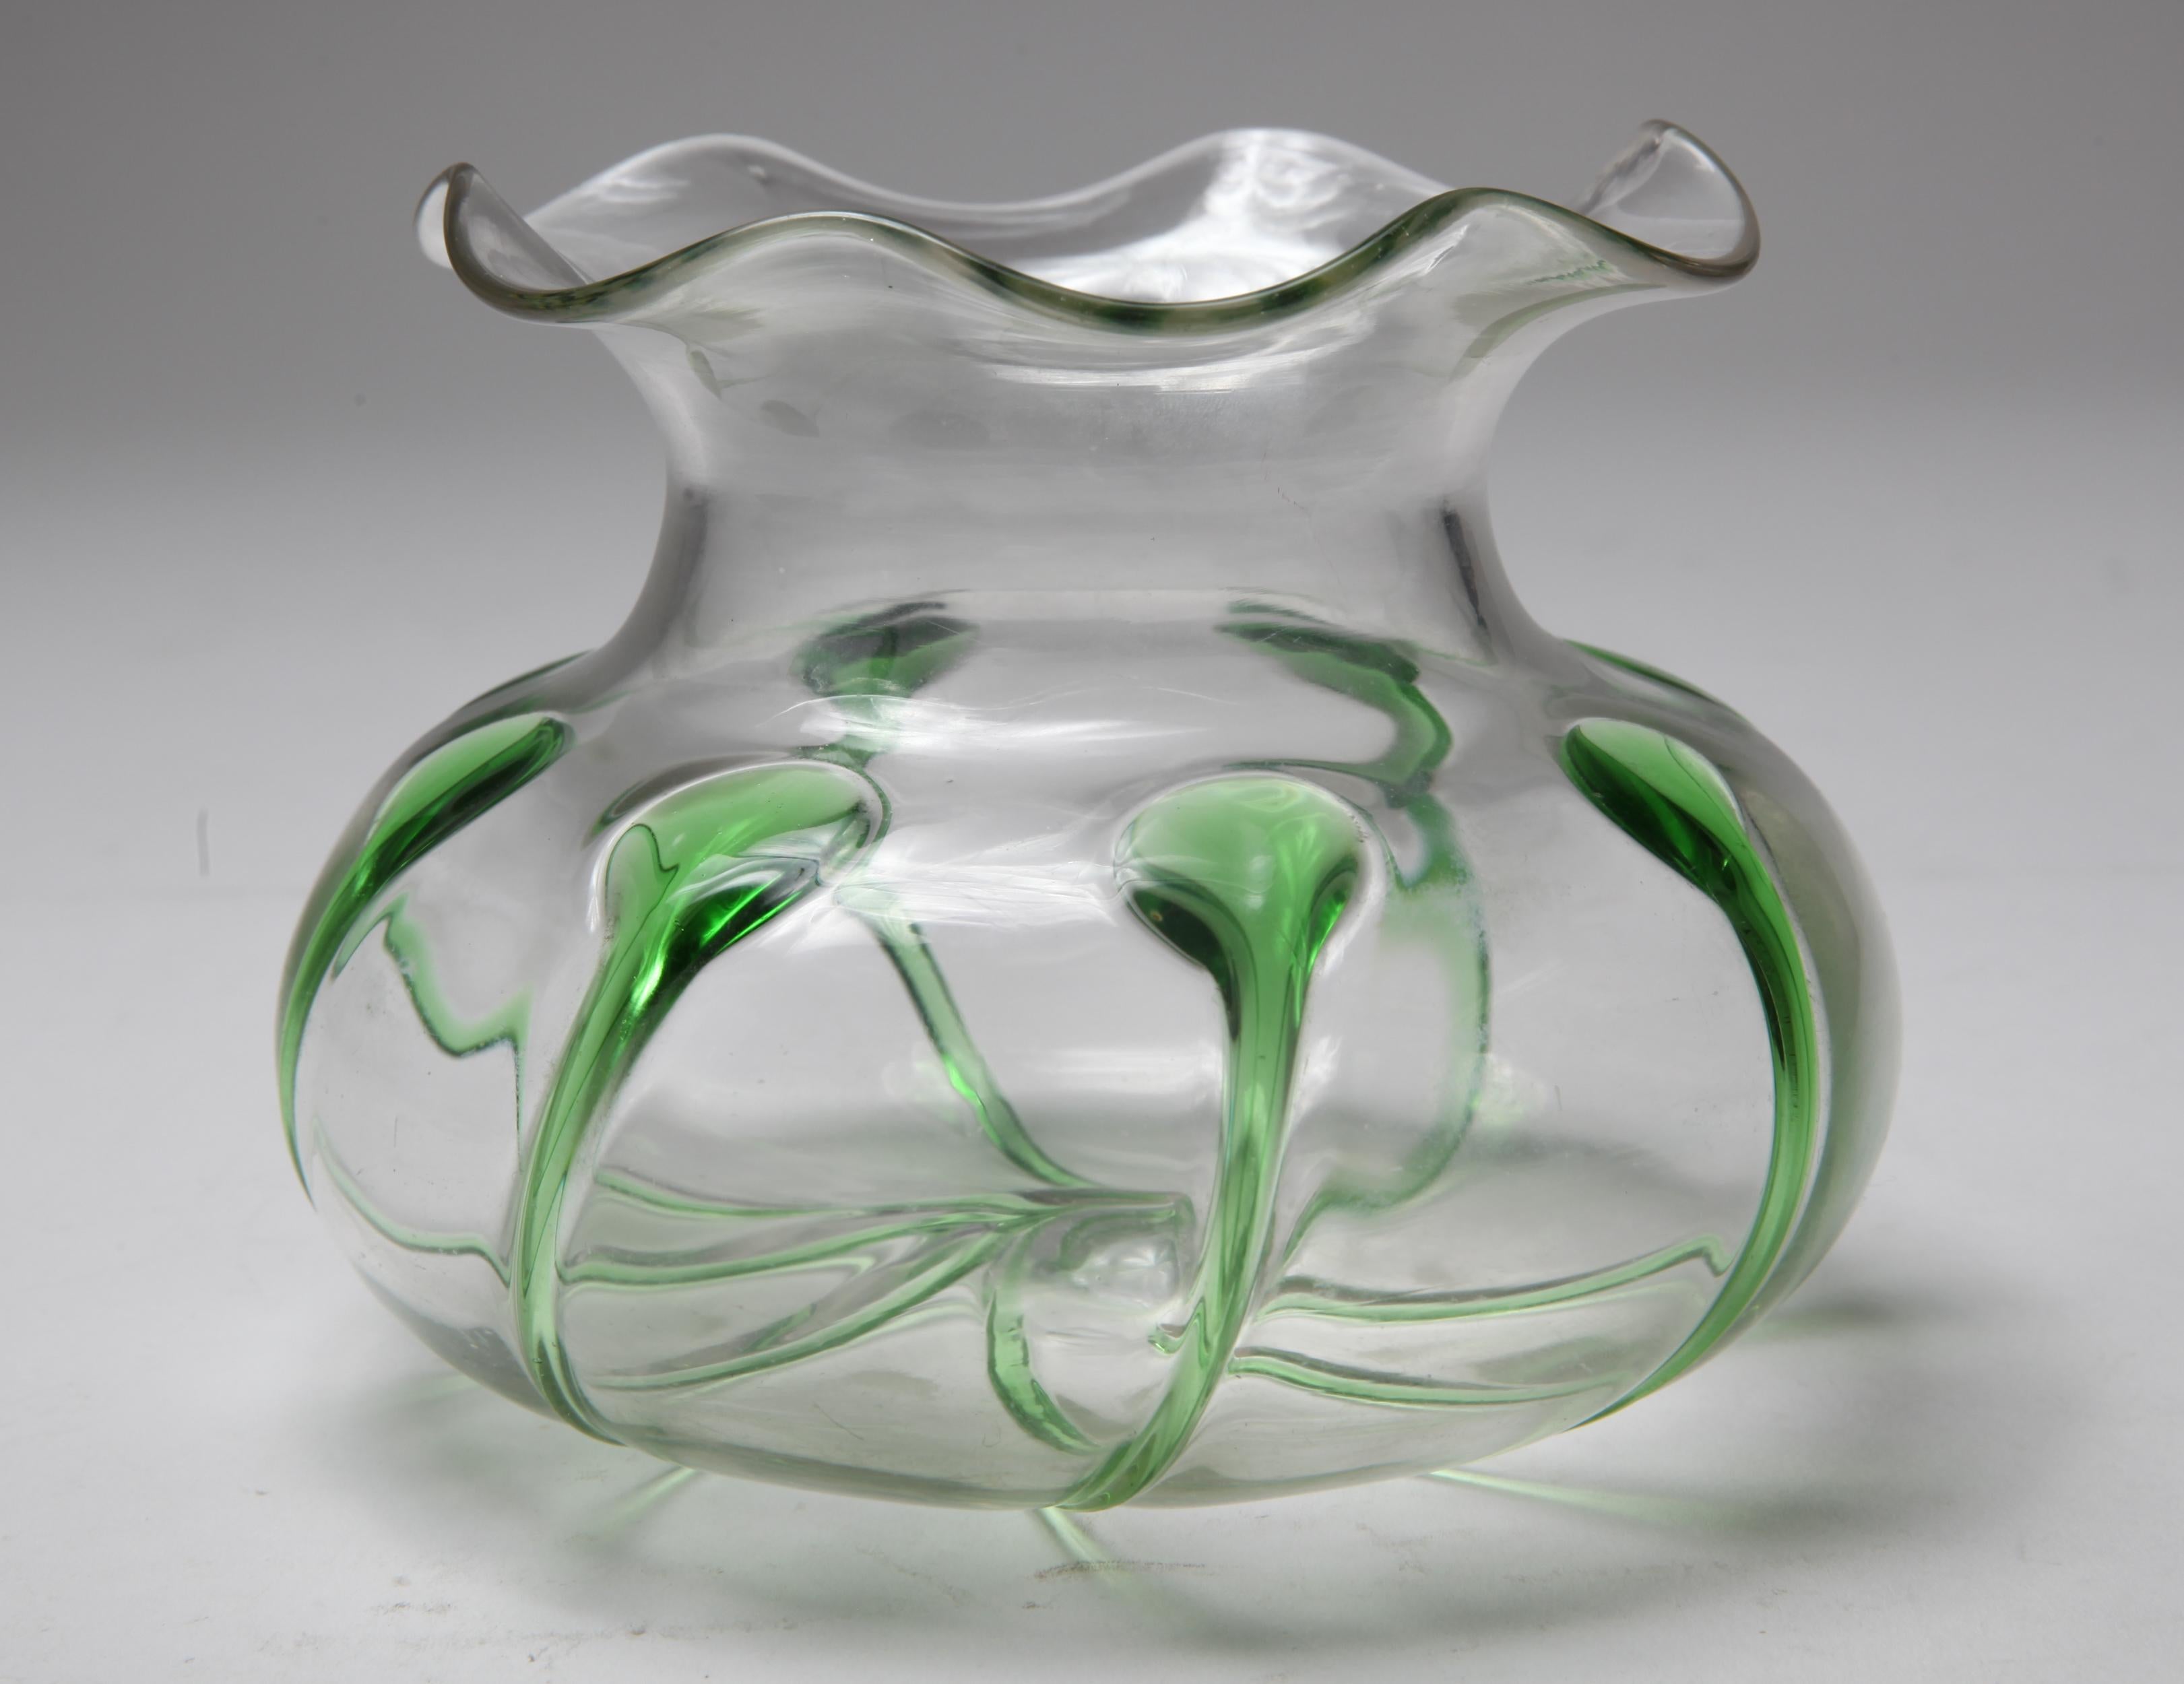 Coupe circulaire décorative en verre de style Art Nouveau avec des accents verts. La pièce a probablement été fabriquée au milieu du 20e siècle et est en très bon état avec une usure appropriée à l'âge.